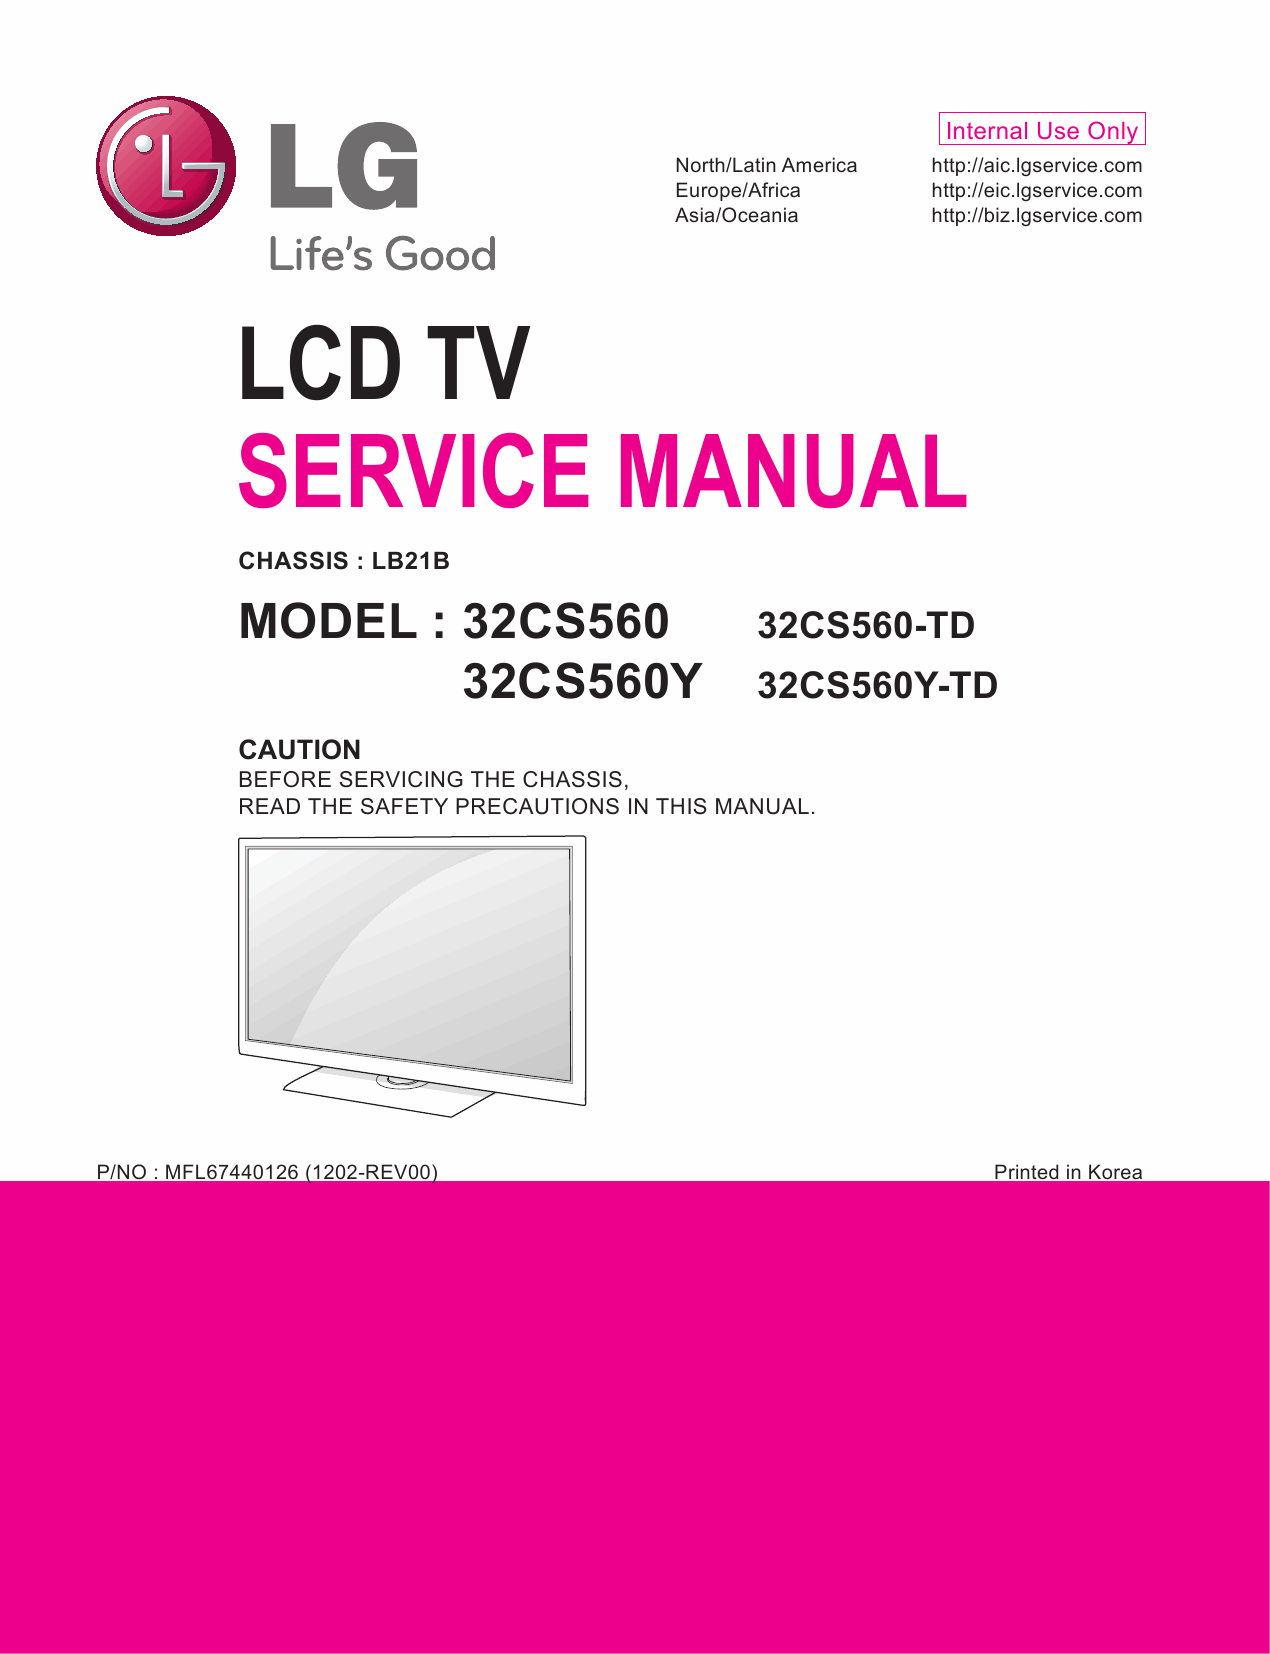 LG_LCD_TV_32CS560_560Y_Service_Manual_2012_Qmanual.com-1